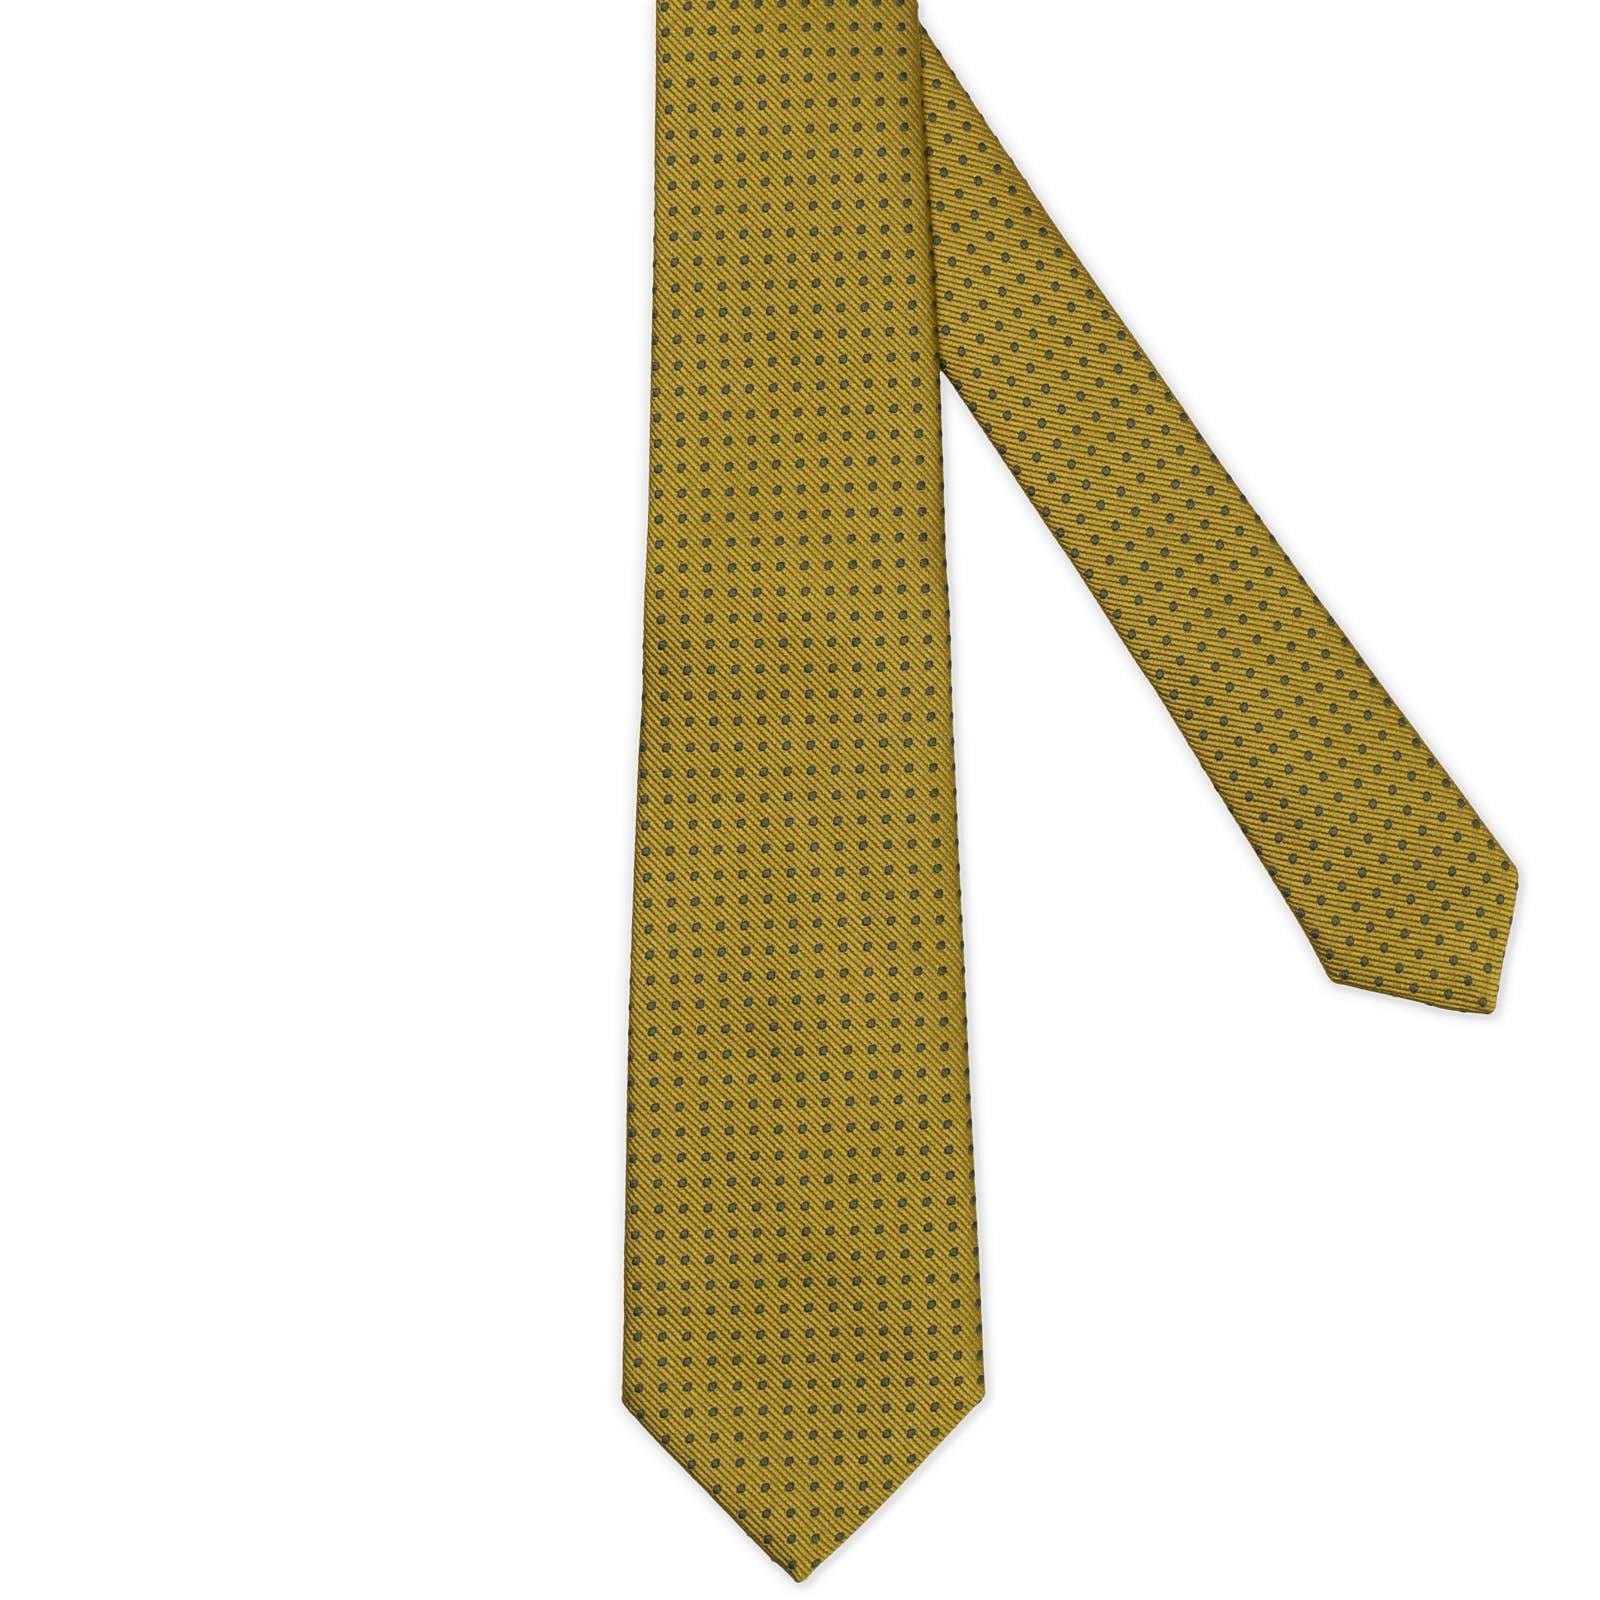 MATTABISCH FOR VANNUCCI Olive Green Dotted Silk Tie NEW